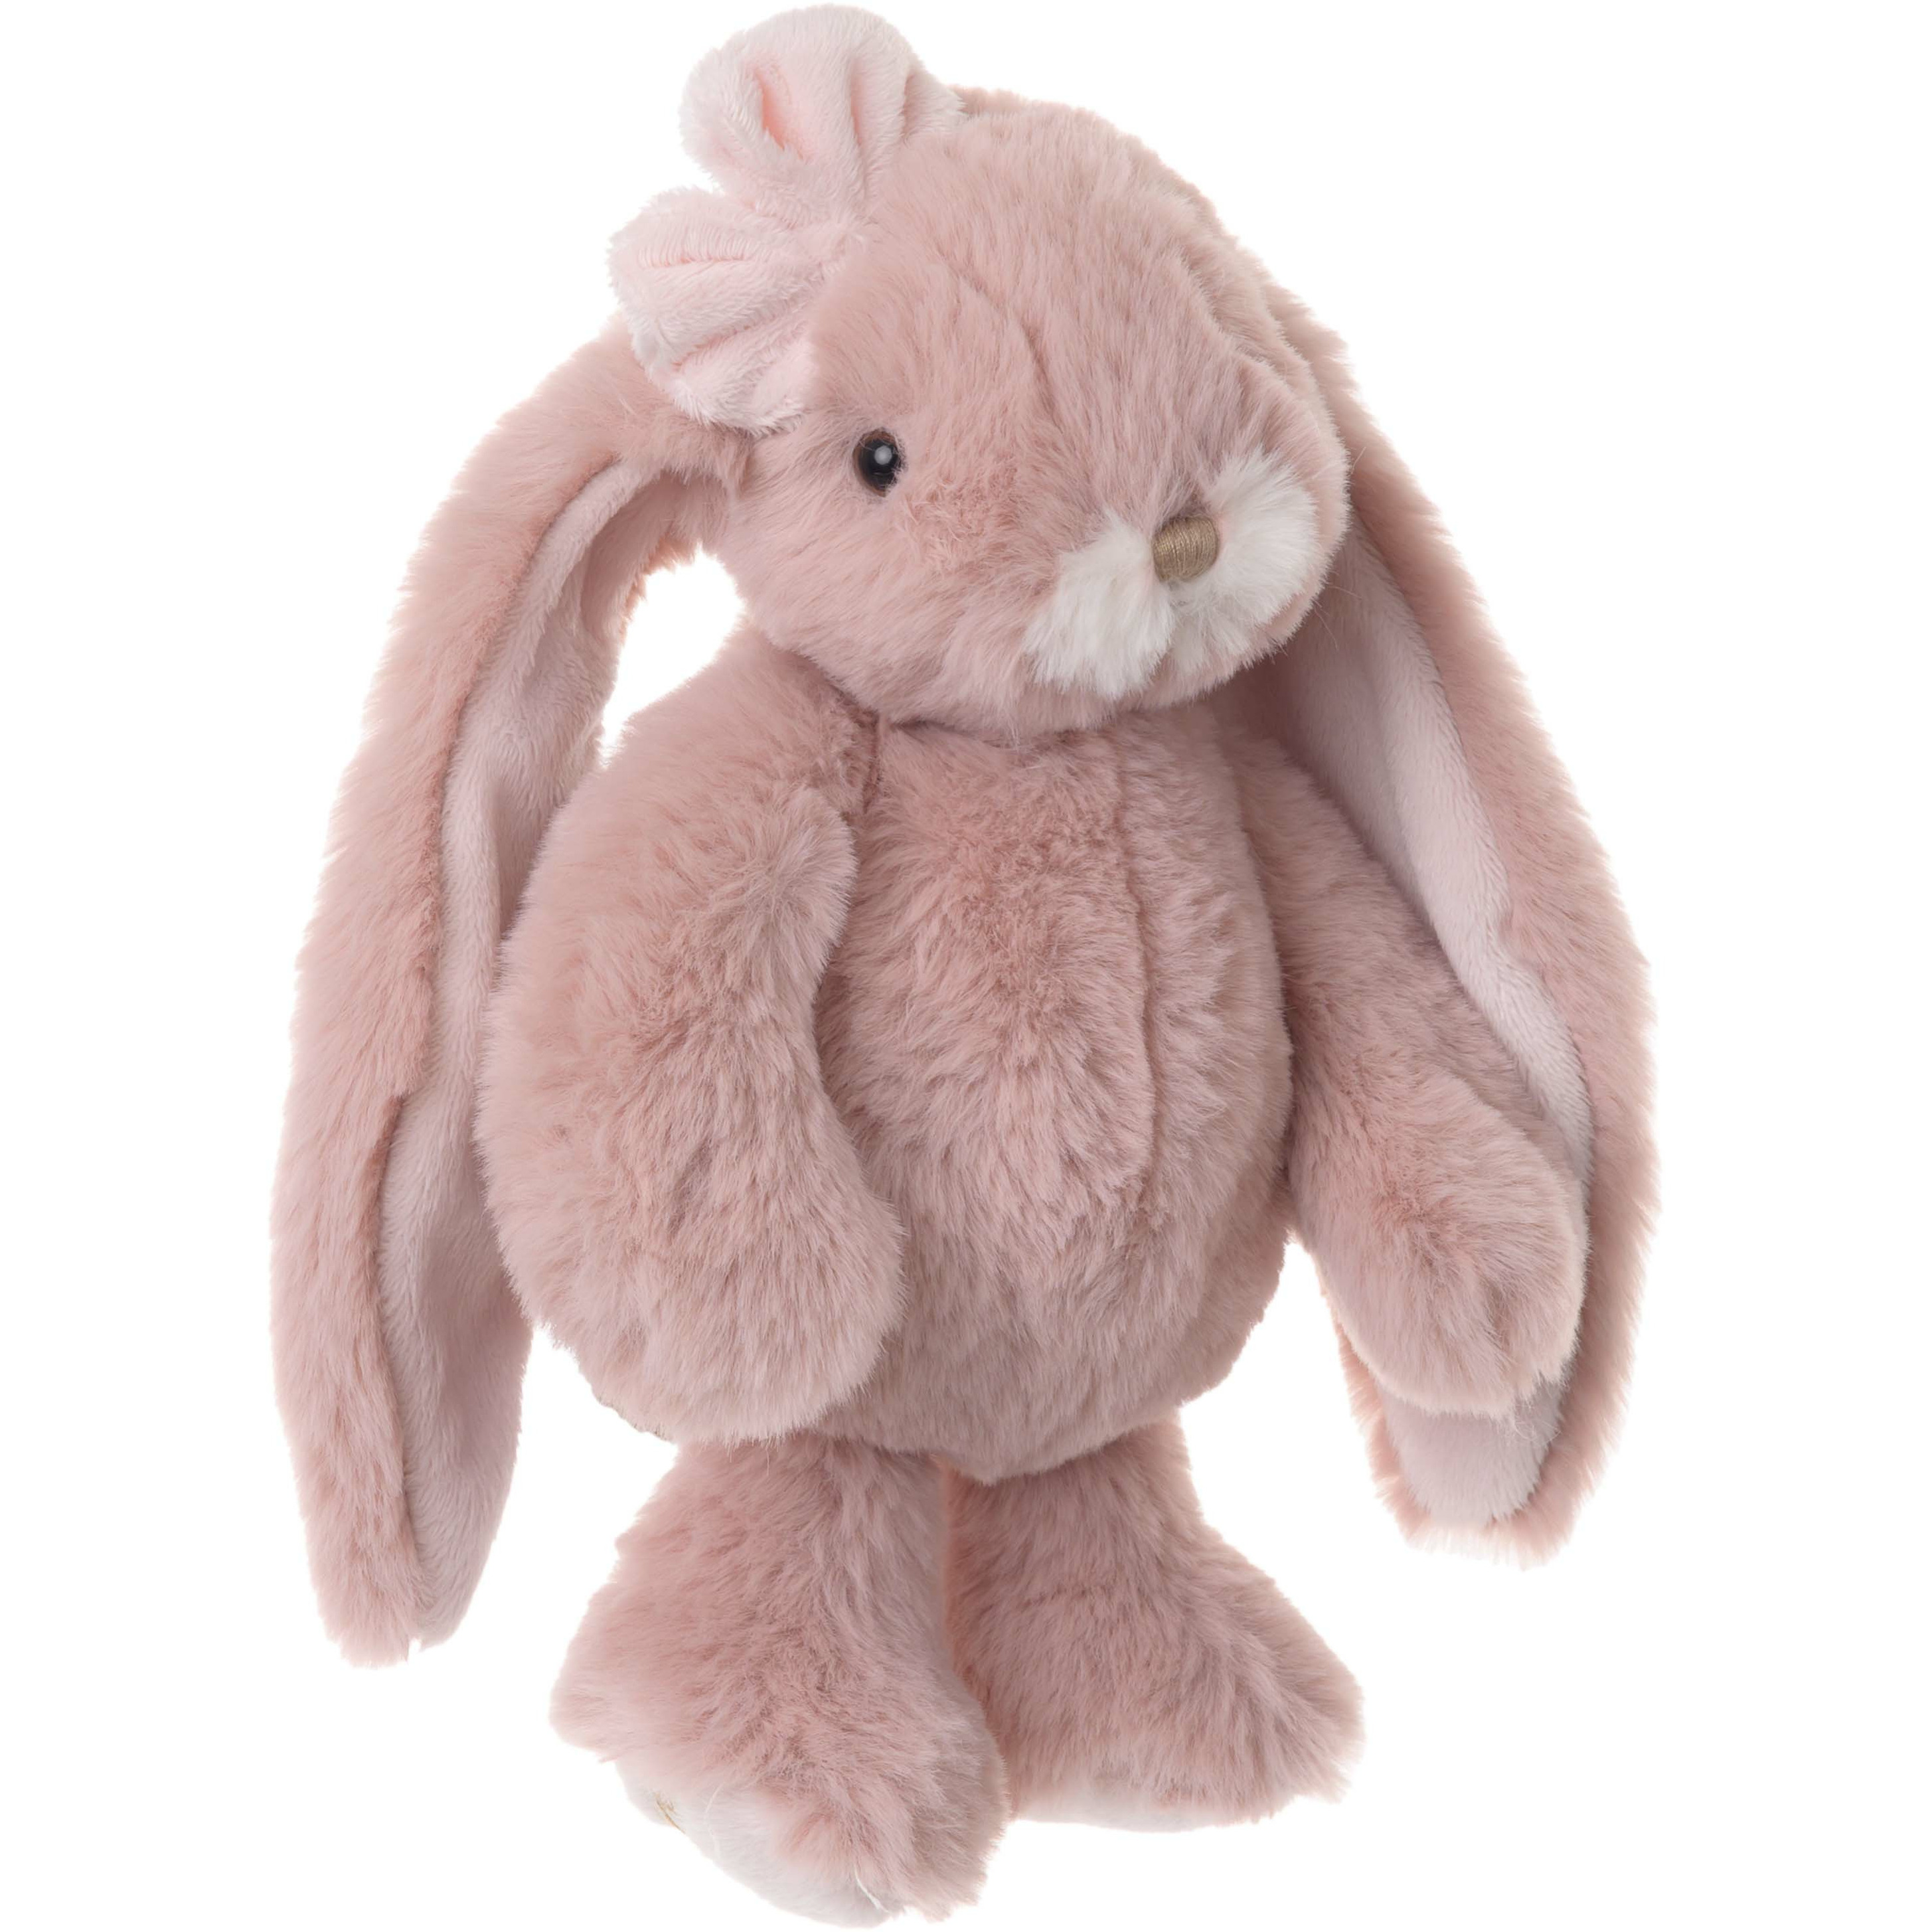 Bukowski pluche konijn knuffeldier - oud roze - staand - 22 cm - luxe knuffels -